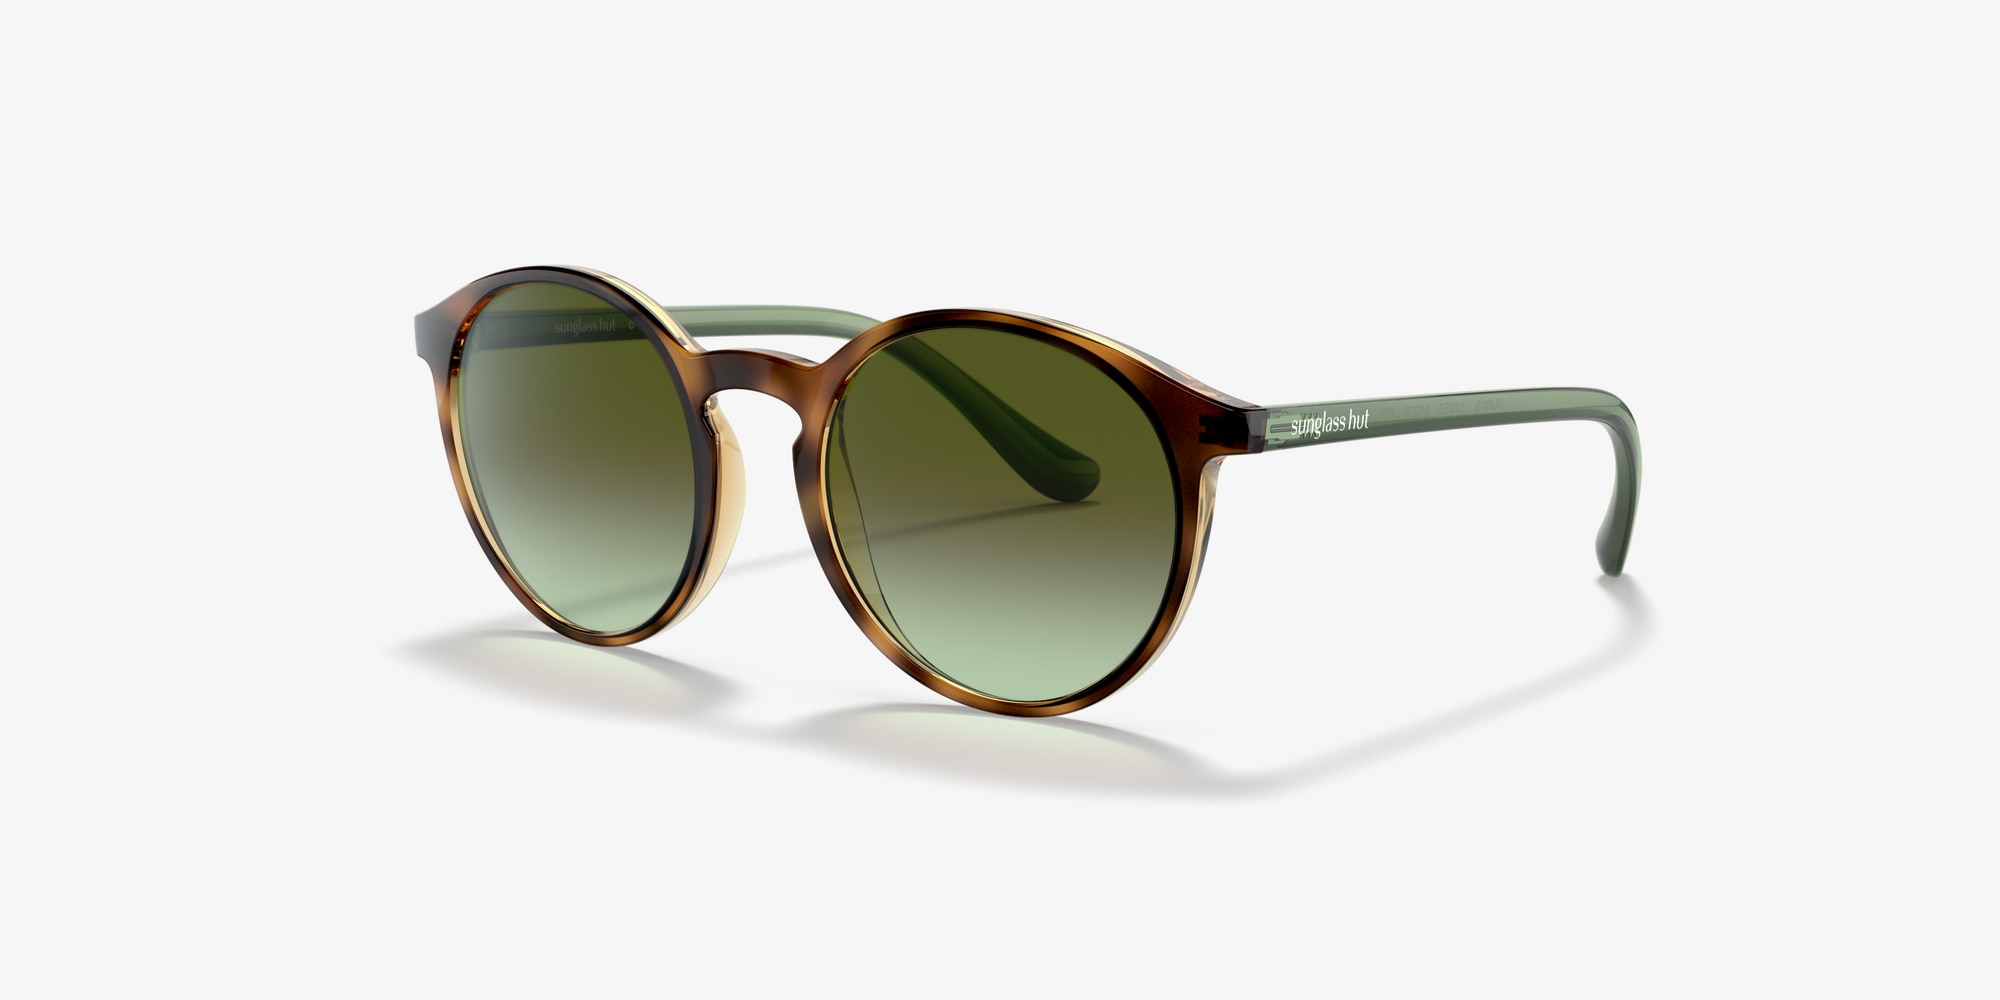 Post Malone Sunglasses: Post Malone x Arnette Eyewear at Sunglass Hut